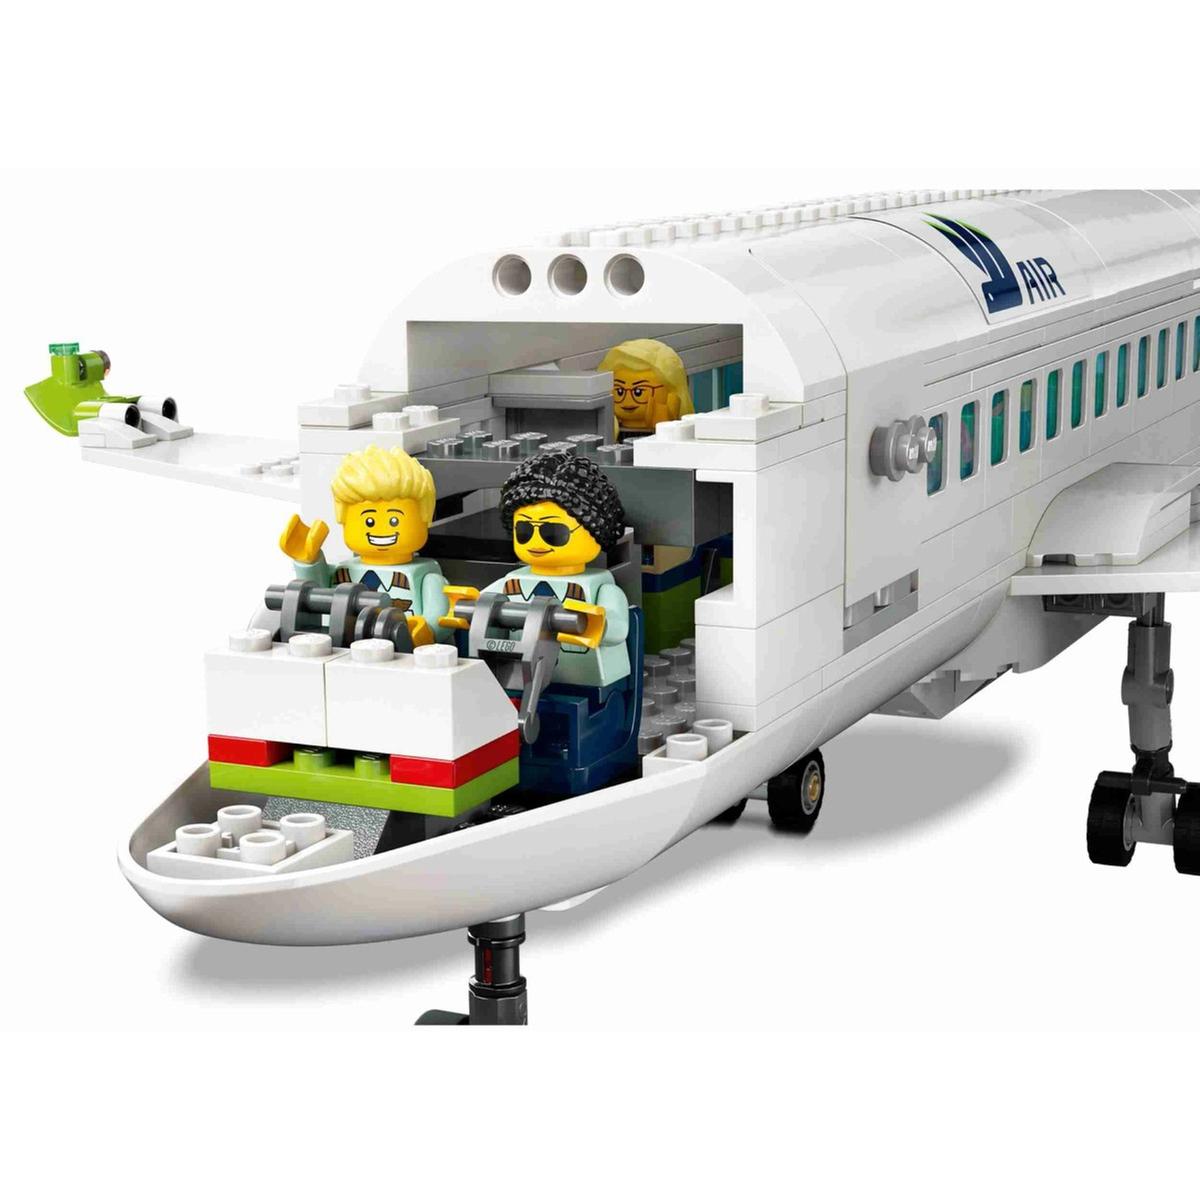 LEGO - Avión de pasajeros Lego City 934470, Lego City